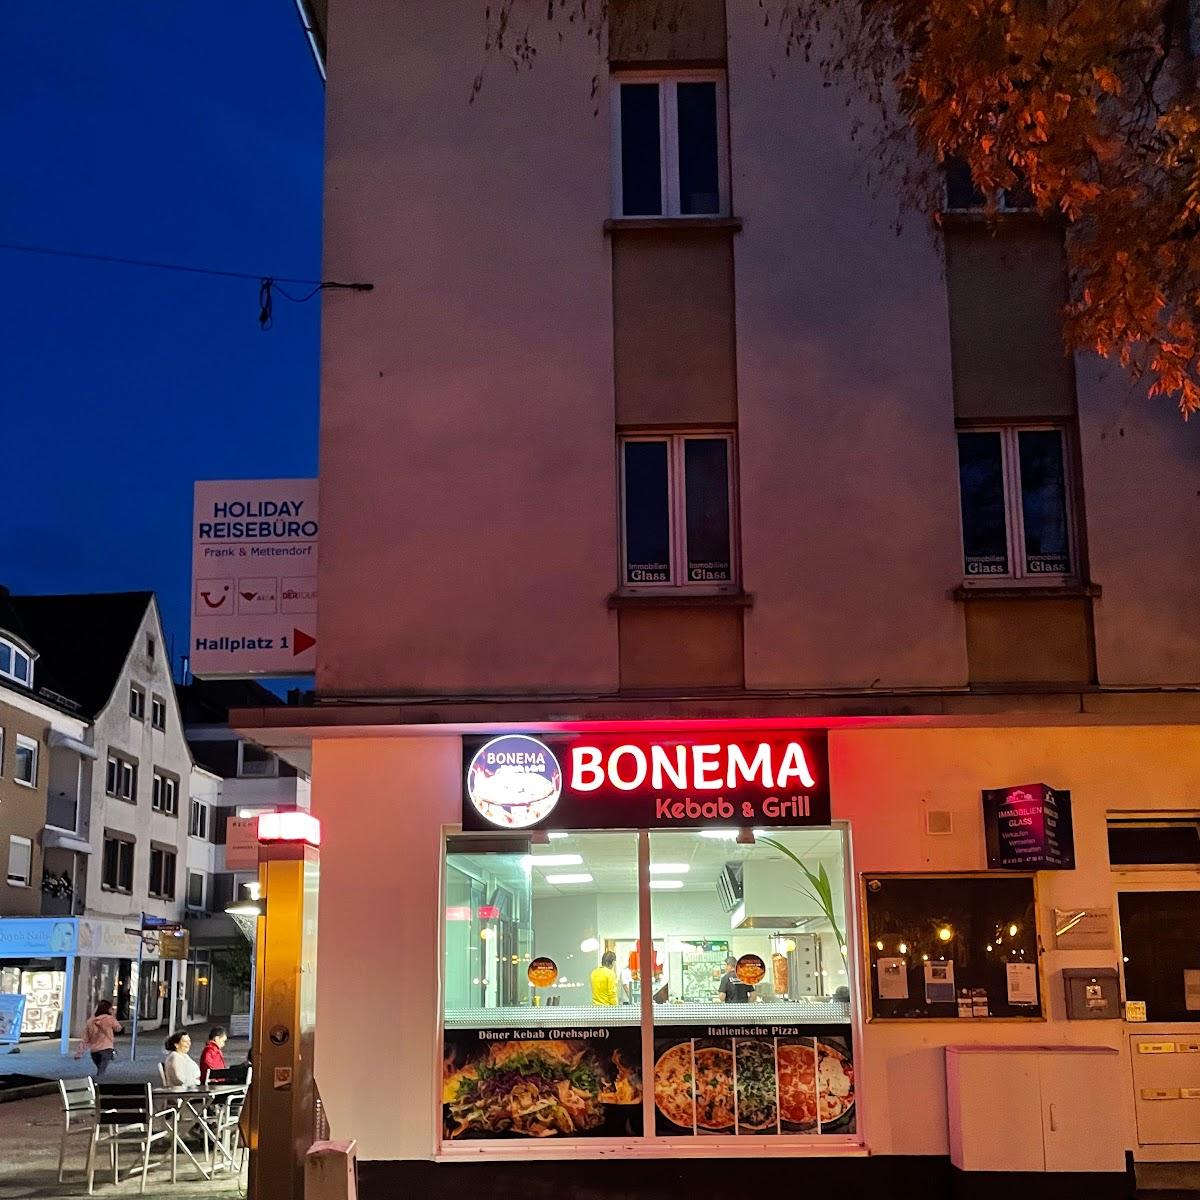 Restaurant "Bonema" in Zweibrücken